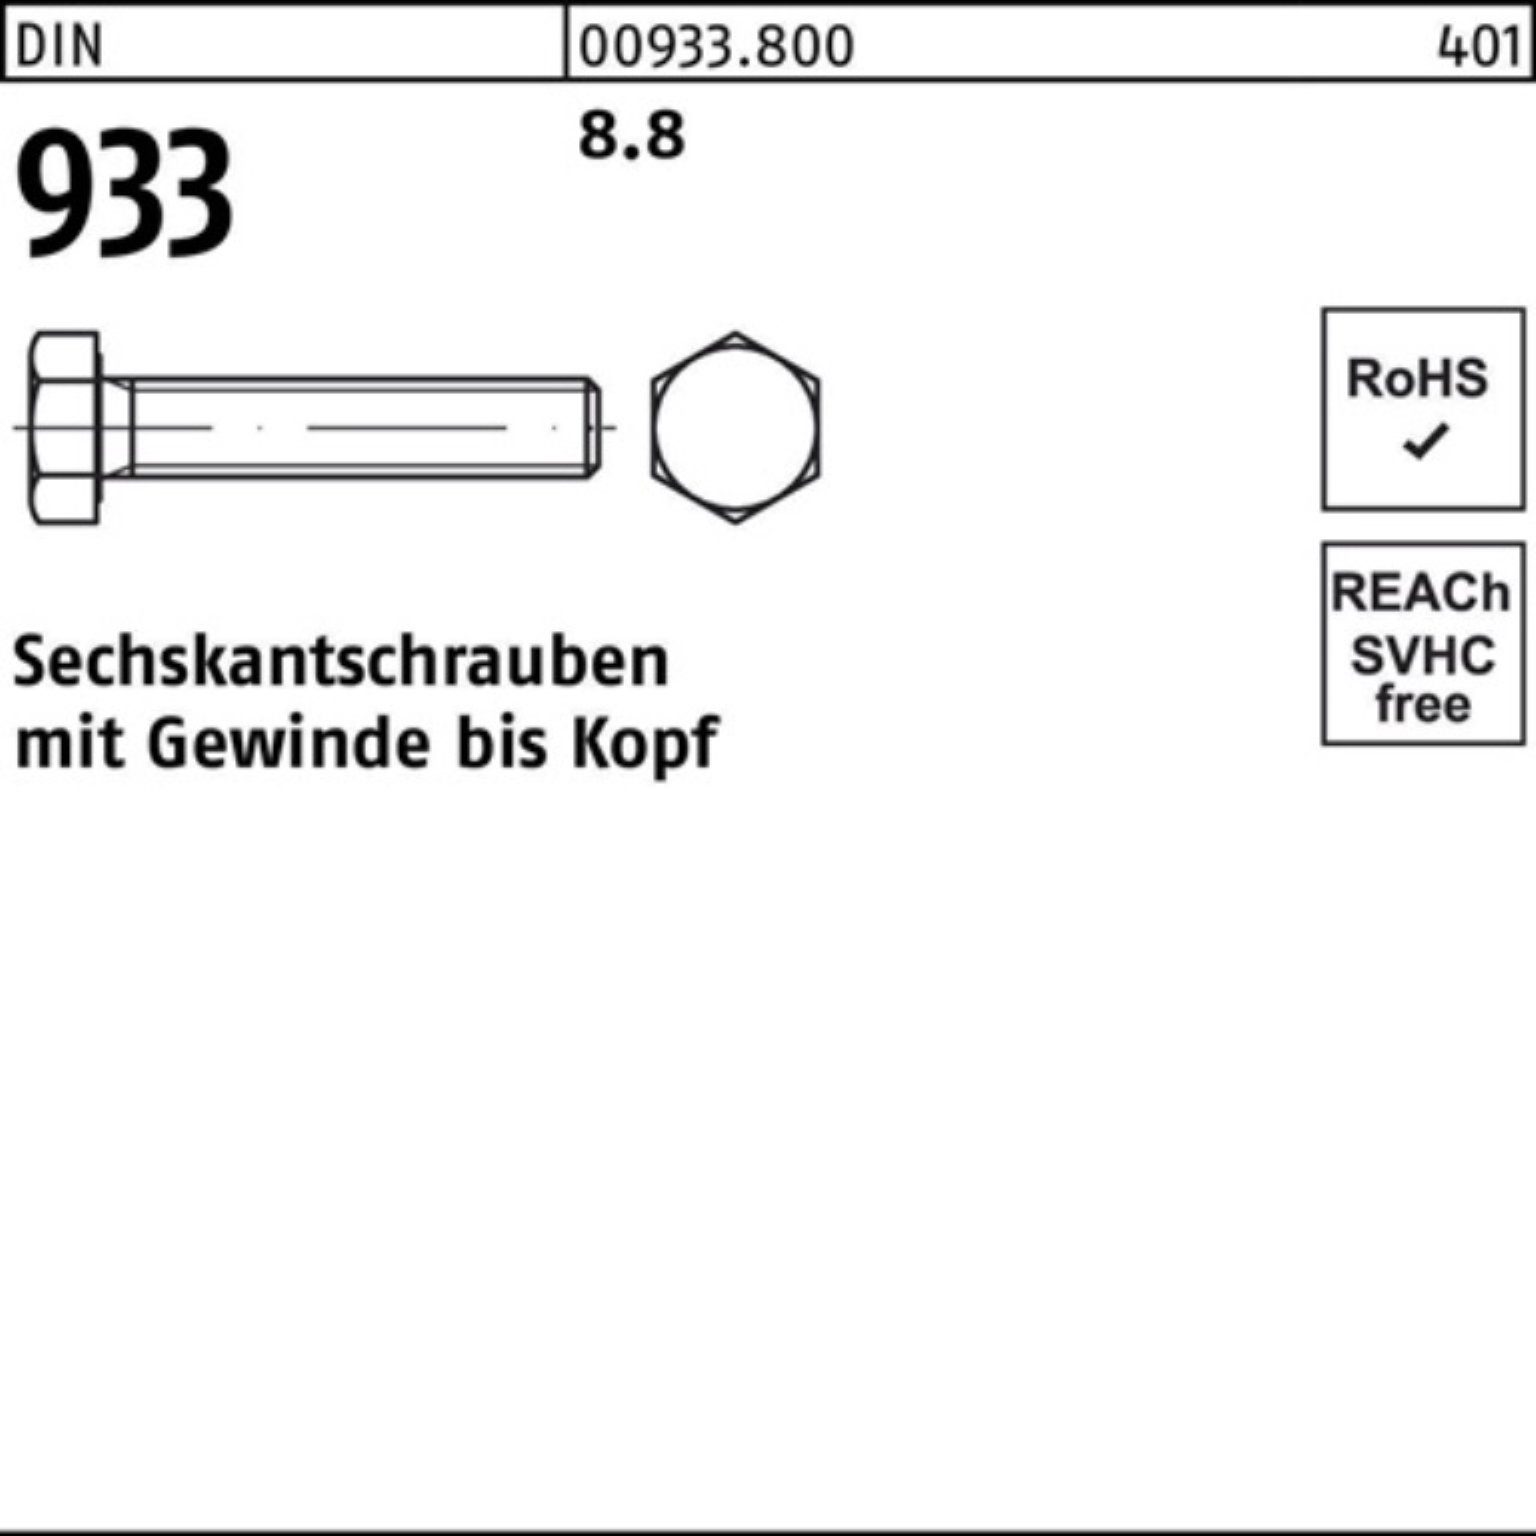 Reyher Sechskantschraube 100er 933 8.8 Sechskantschraube 933 M33x DIN Pack 130 VG Stück 1 DIN